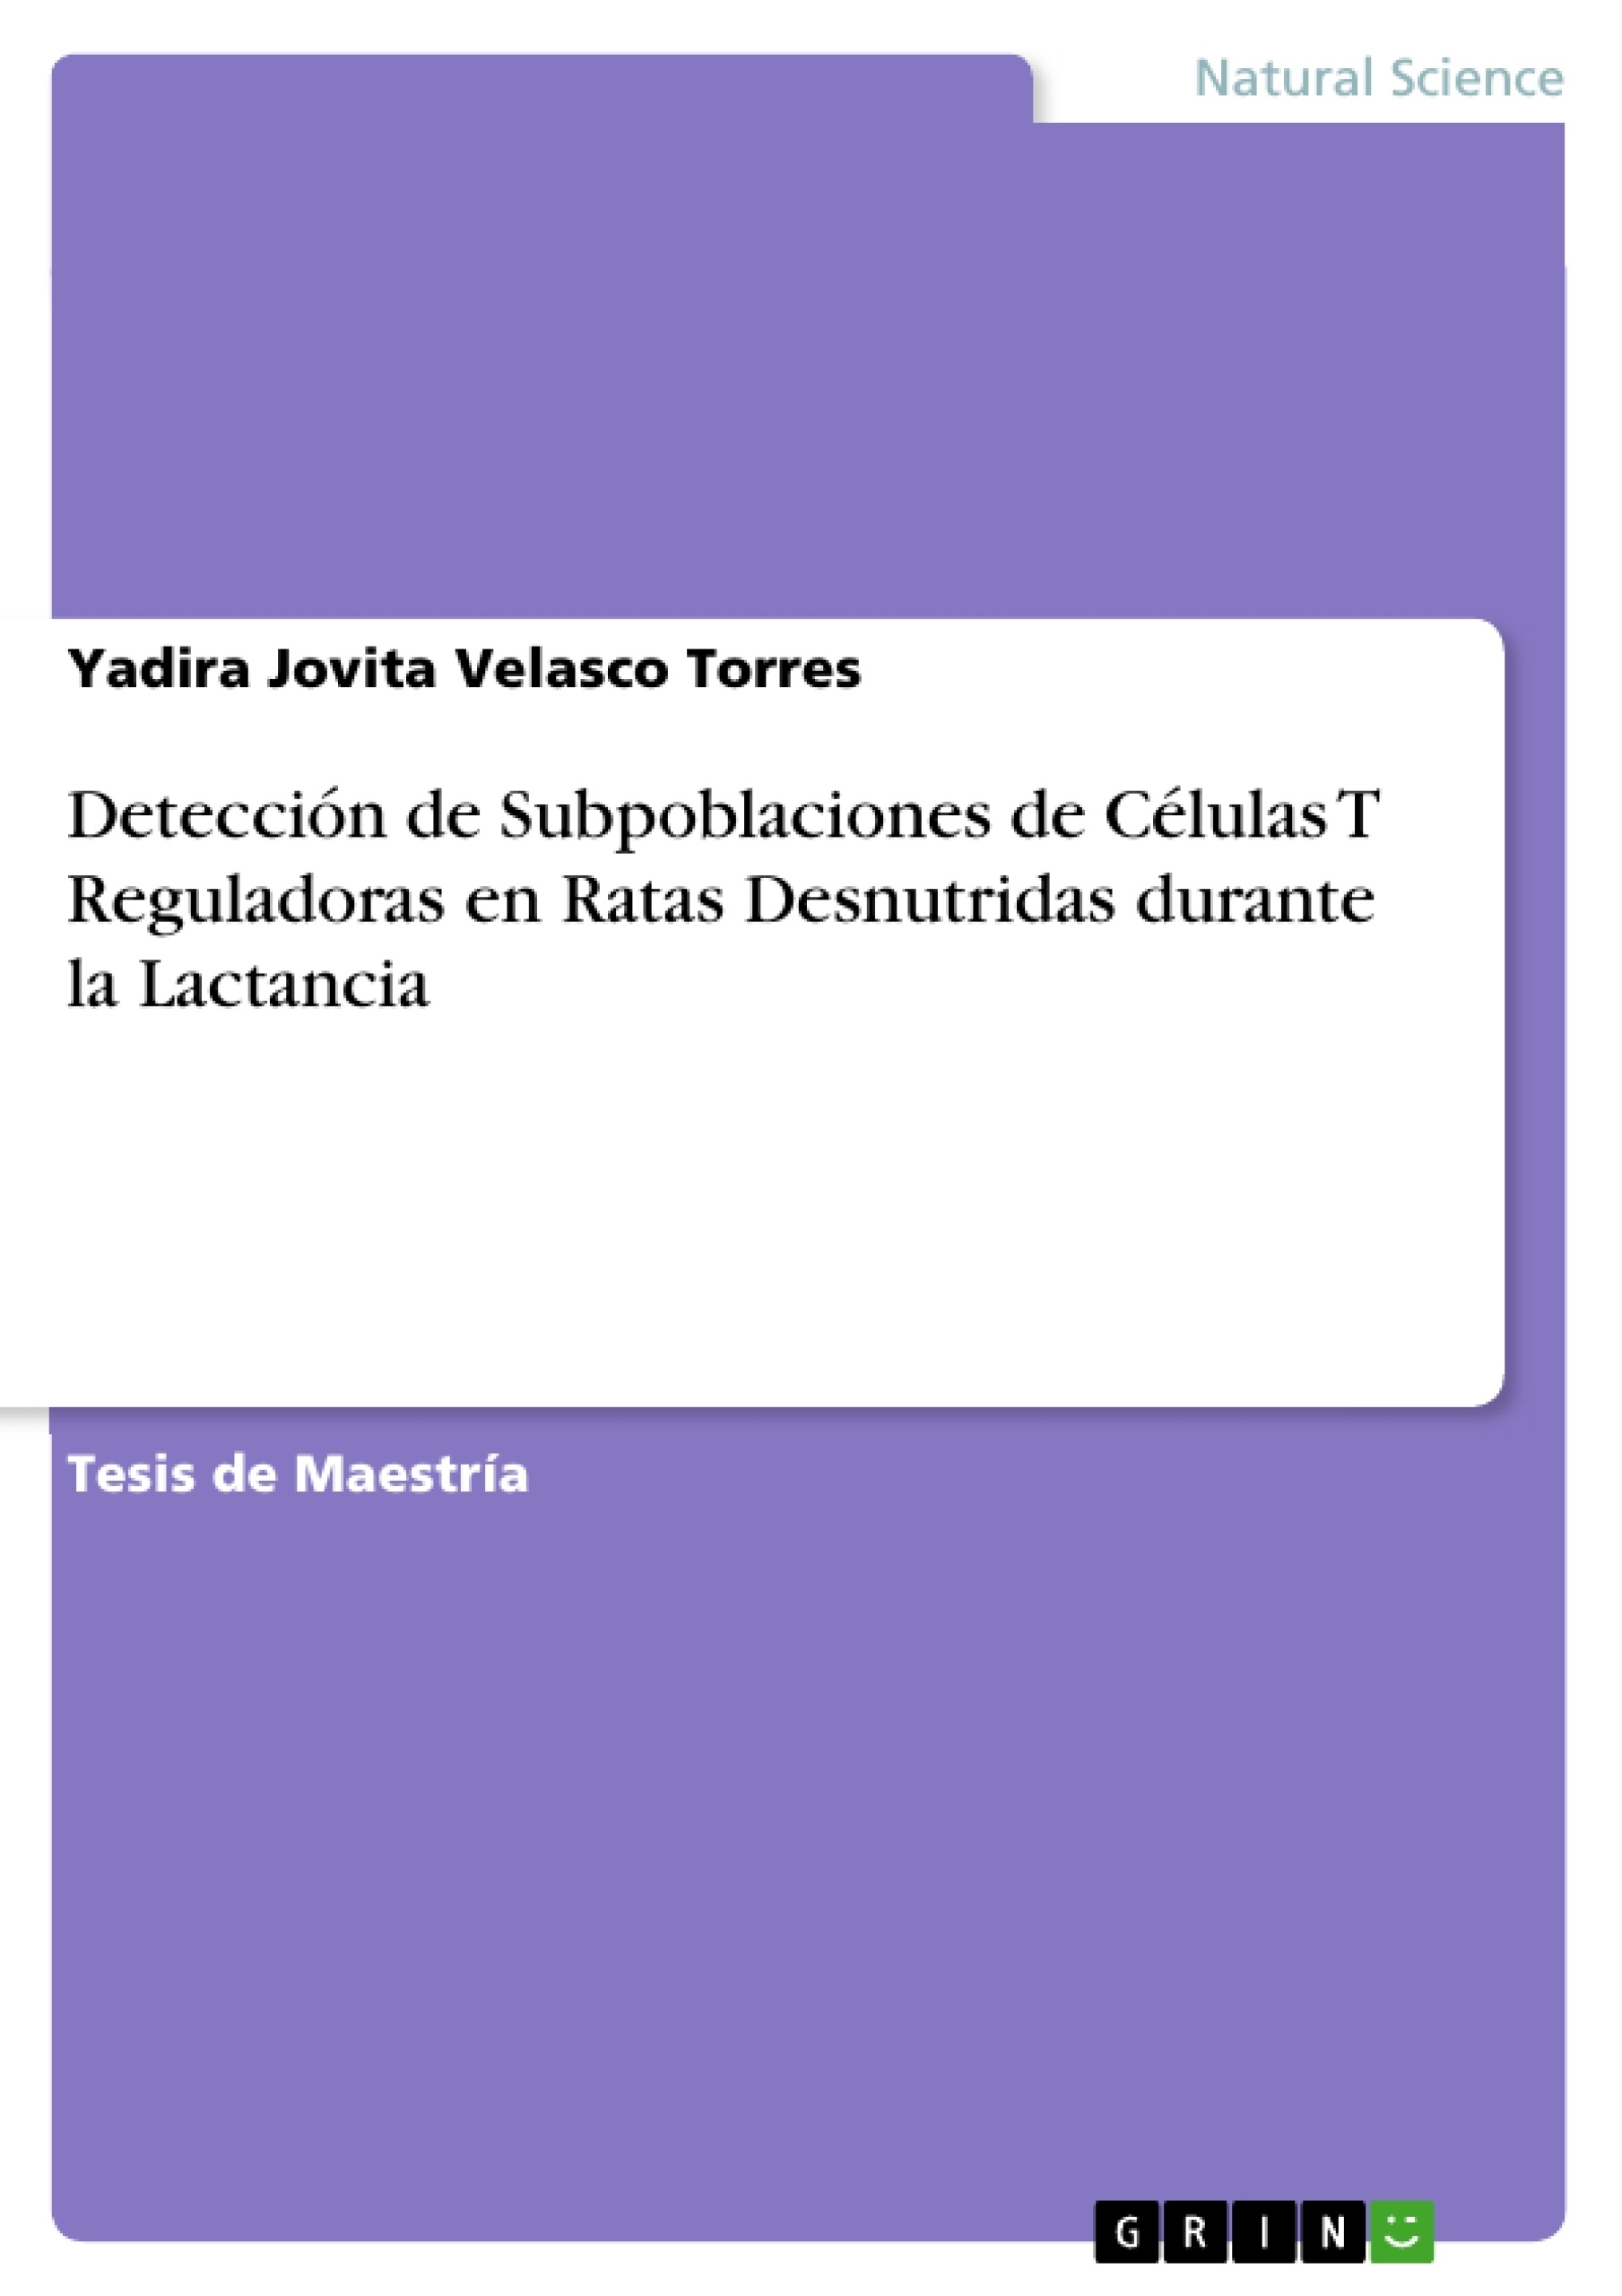 Título: Detección de Subpoblaciones de Células T Reguladoras en Ratas Desnutridas durante la Lactancia